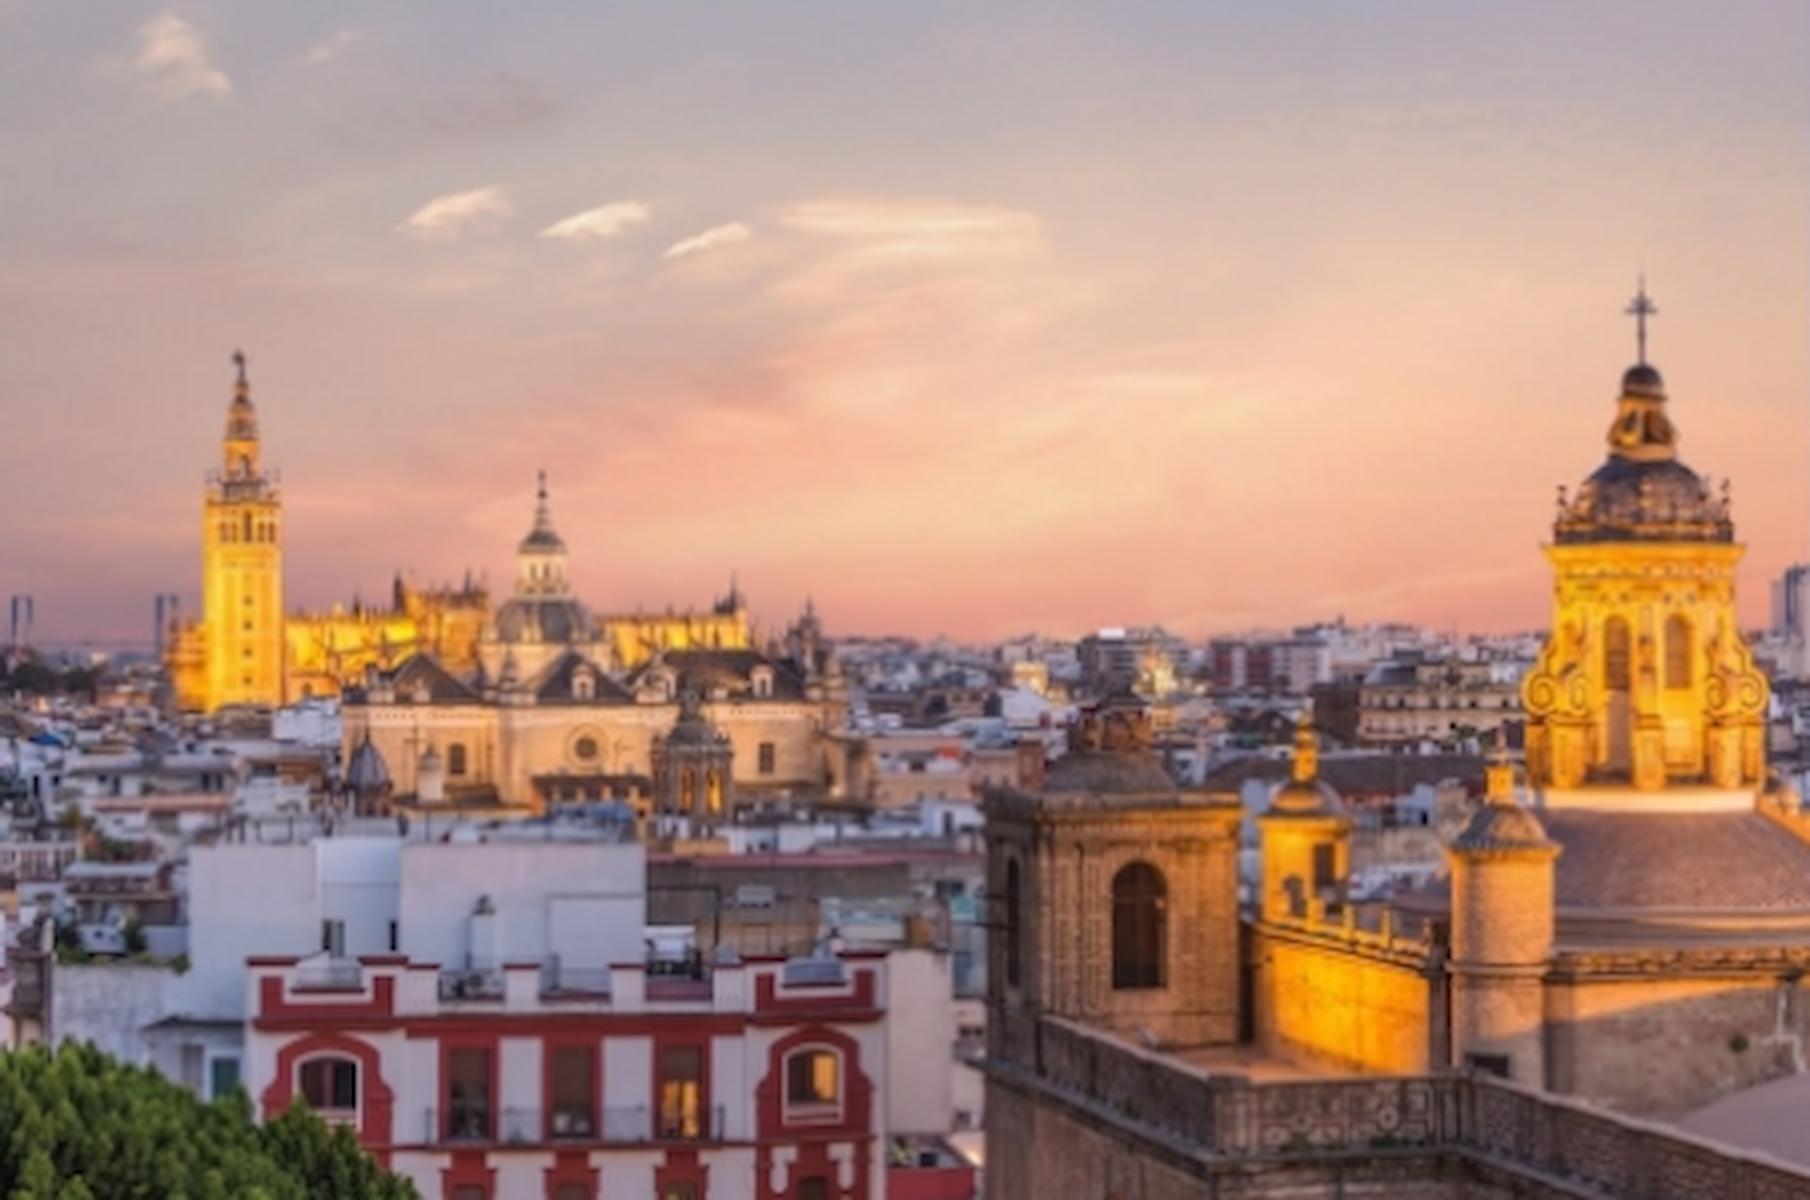 Mantenimiento de alcantarillado en edificios públicos en Sevilla: un problema, una solución y el trabajo de Conlima - Conlima